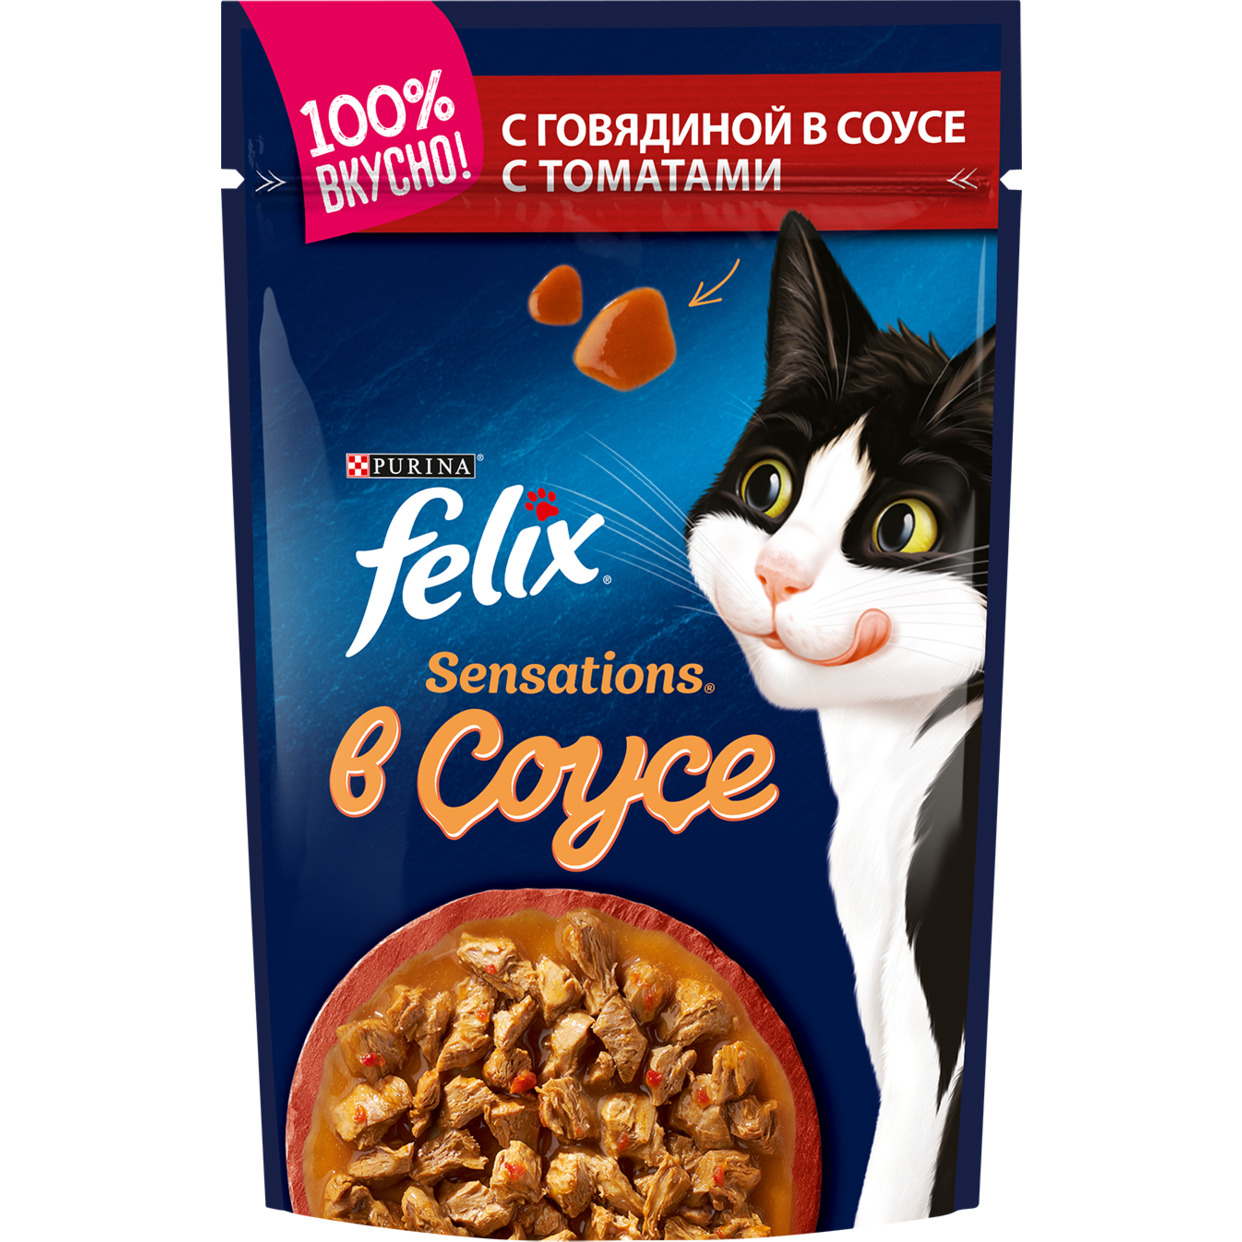 Корм для кошек Felix, говядина в соусе, 85 г по акции в Пятерочке